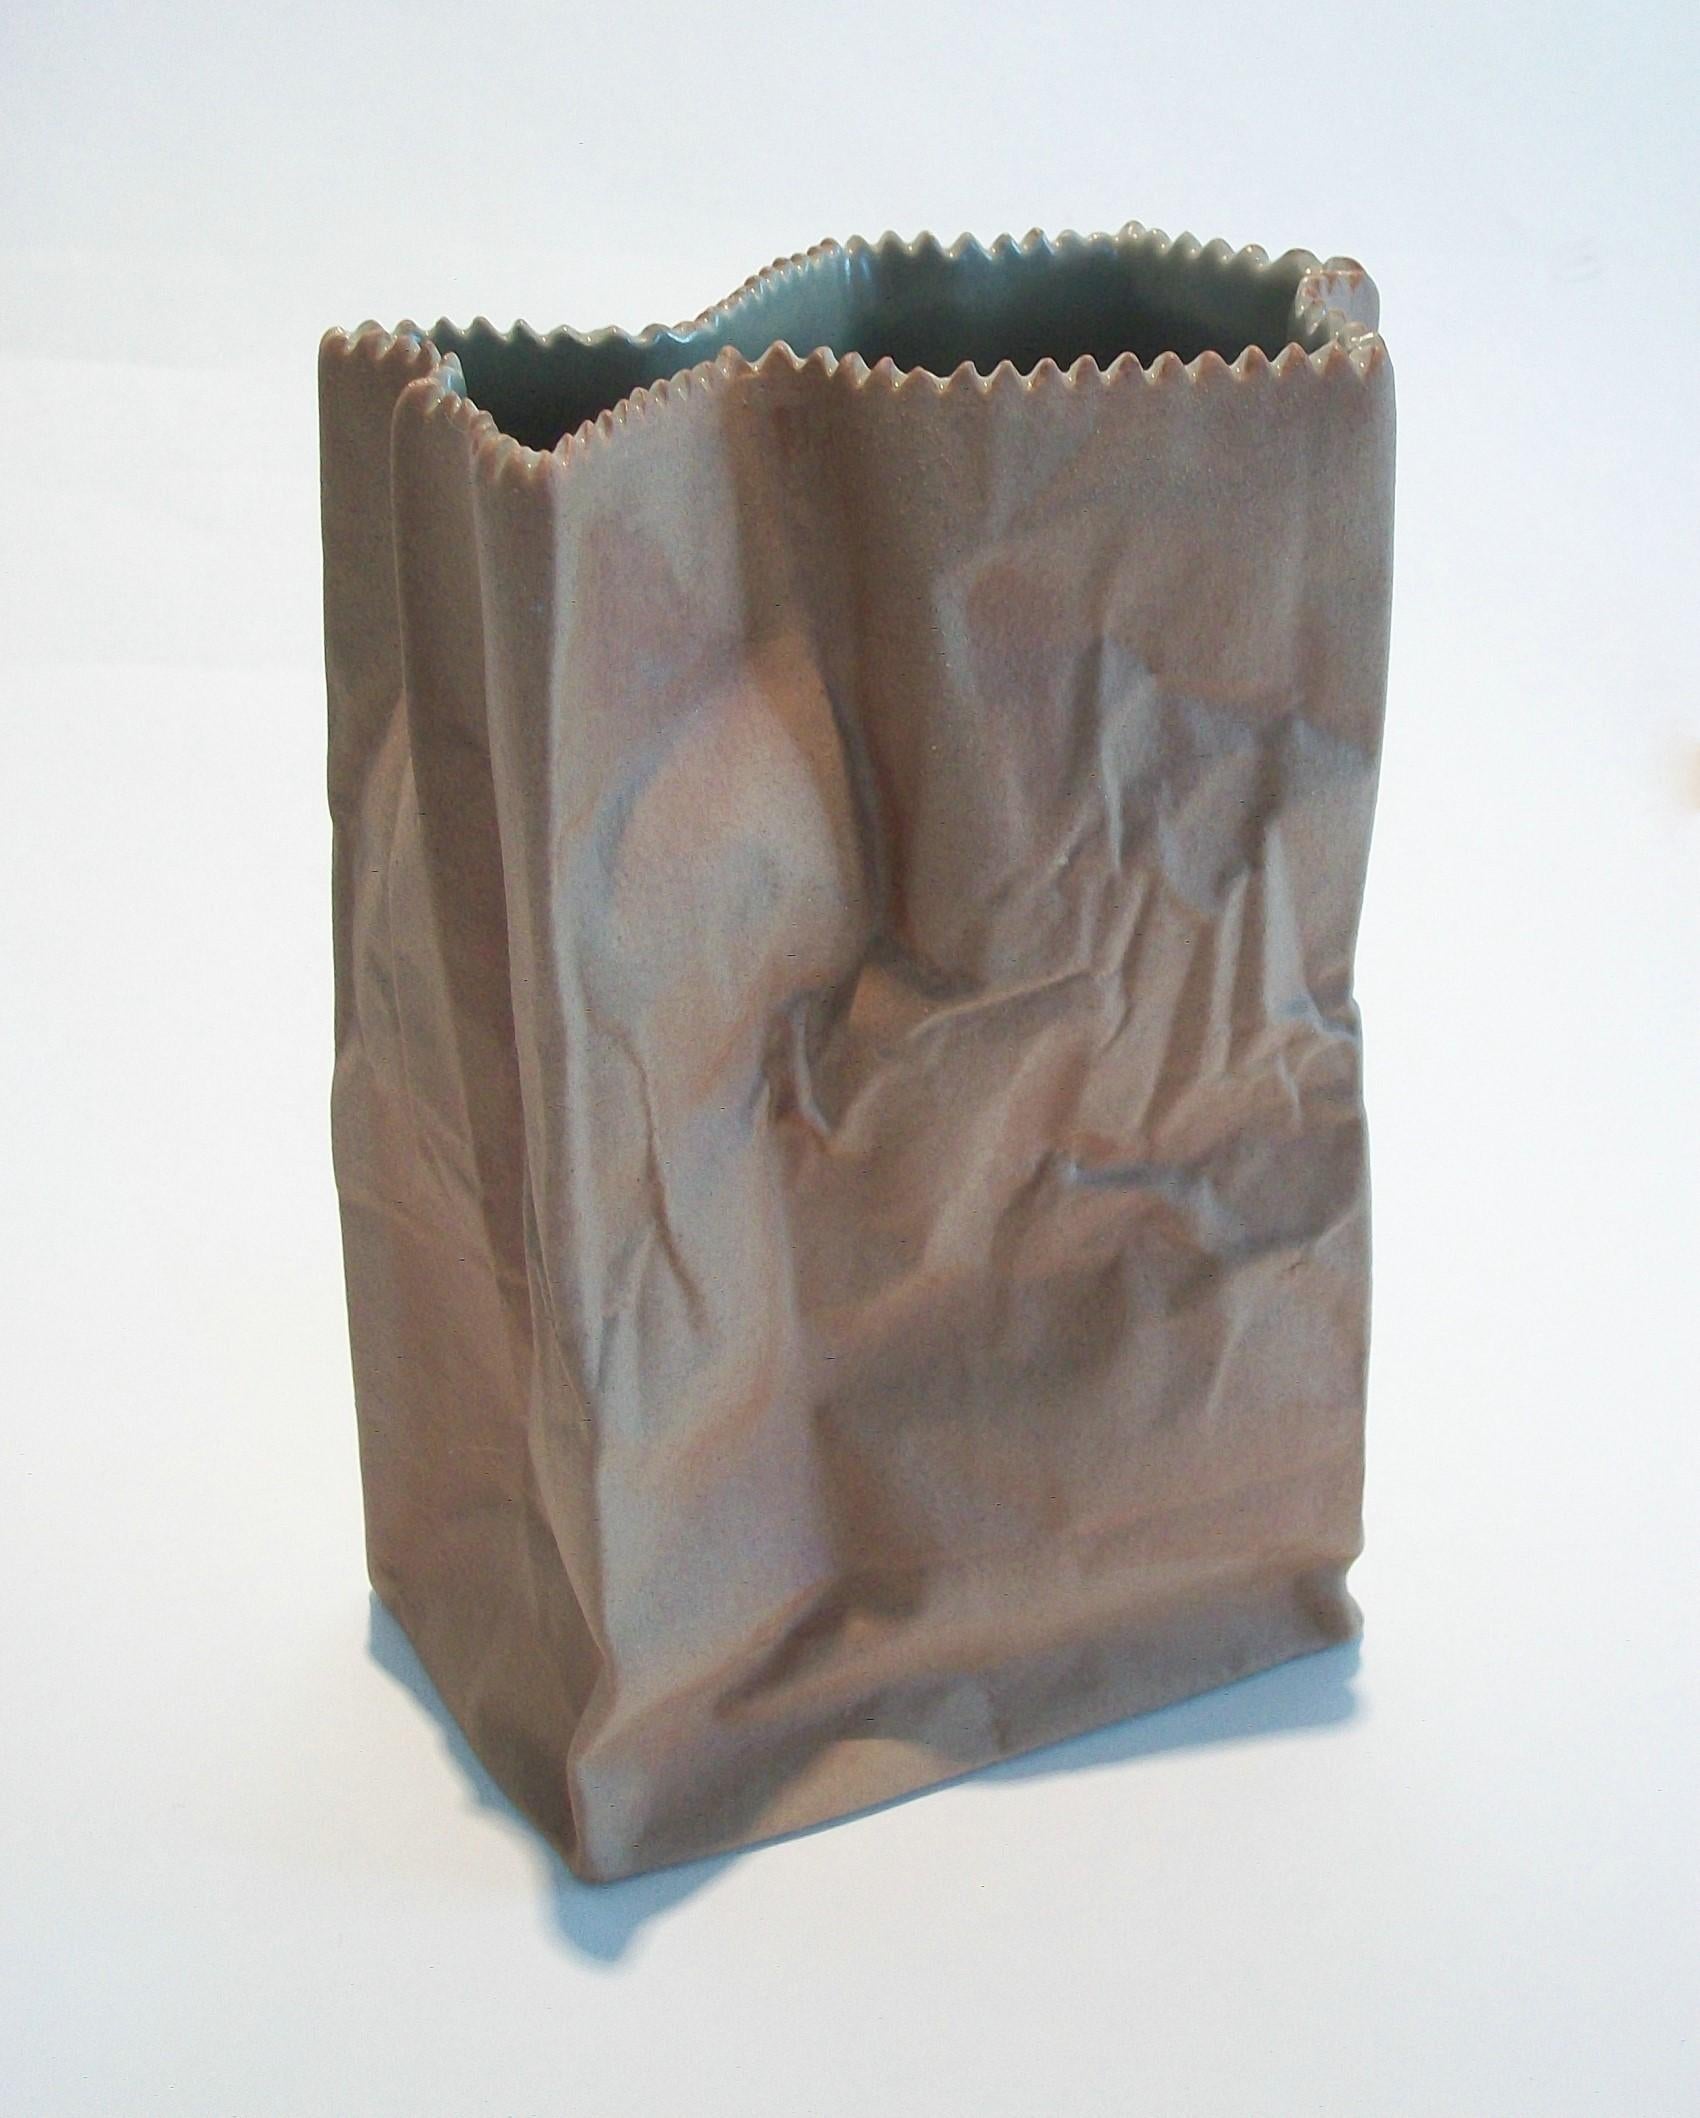 ROSENTHAL (Hersteller, 1879-Gegenwart) - TAPIO WIRKKALA (Designer, 1915-1985) - Mid Century pop art porcelain 'paper bag' vase (Teil der Rosenthal's Studio Line) - mit einer matten Oberfläche auf der Außenseite - grau / grüne Glasur auf der